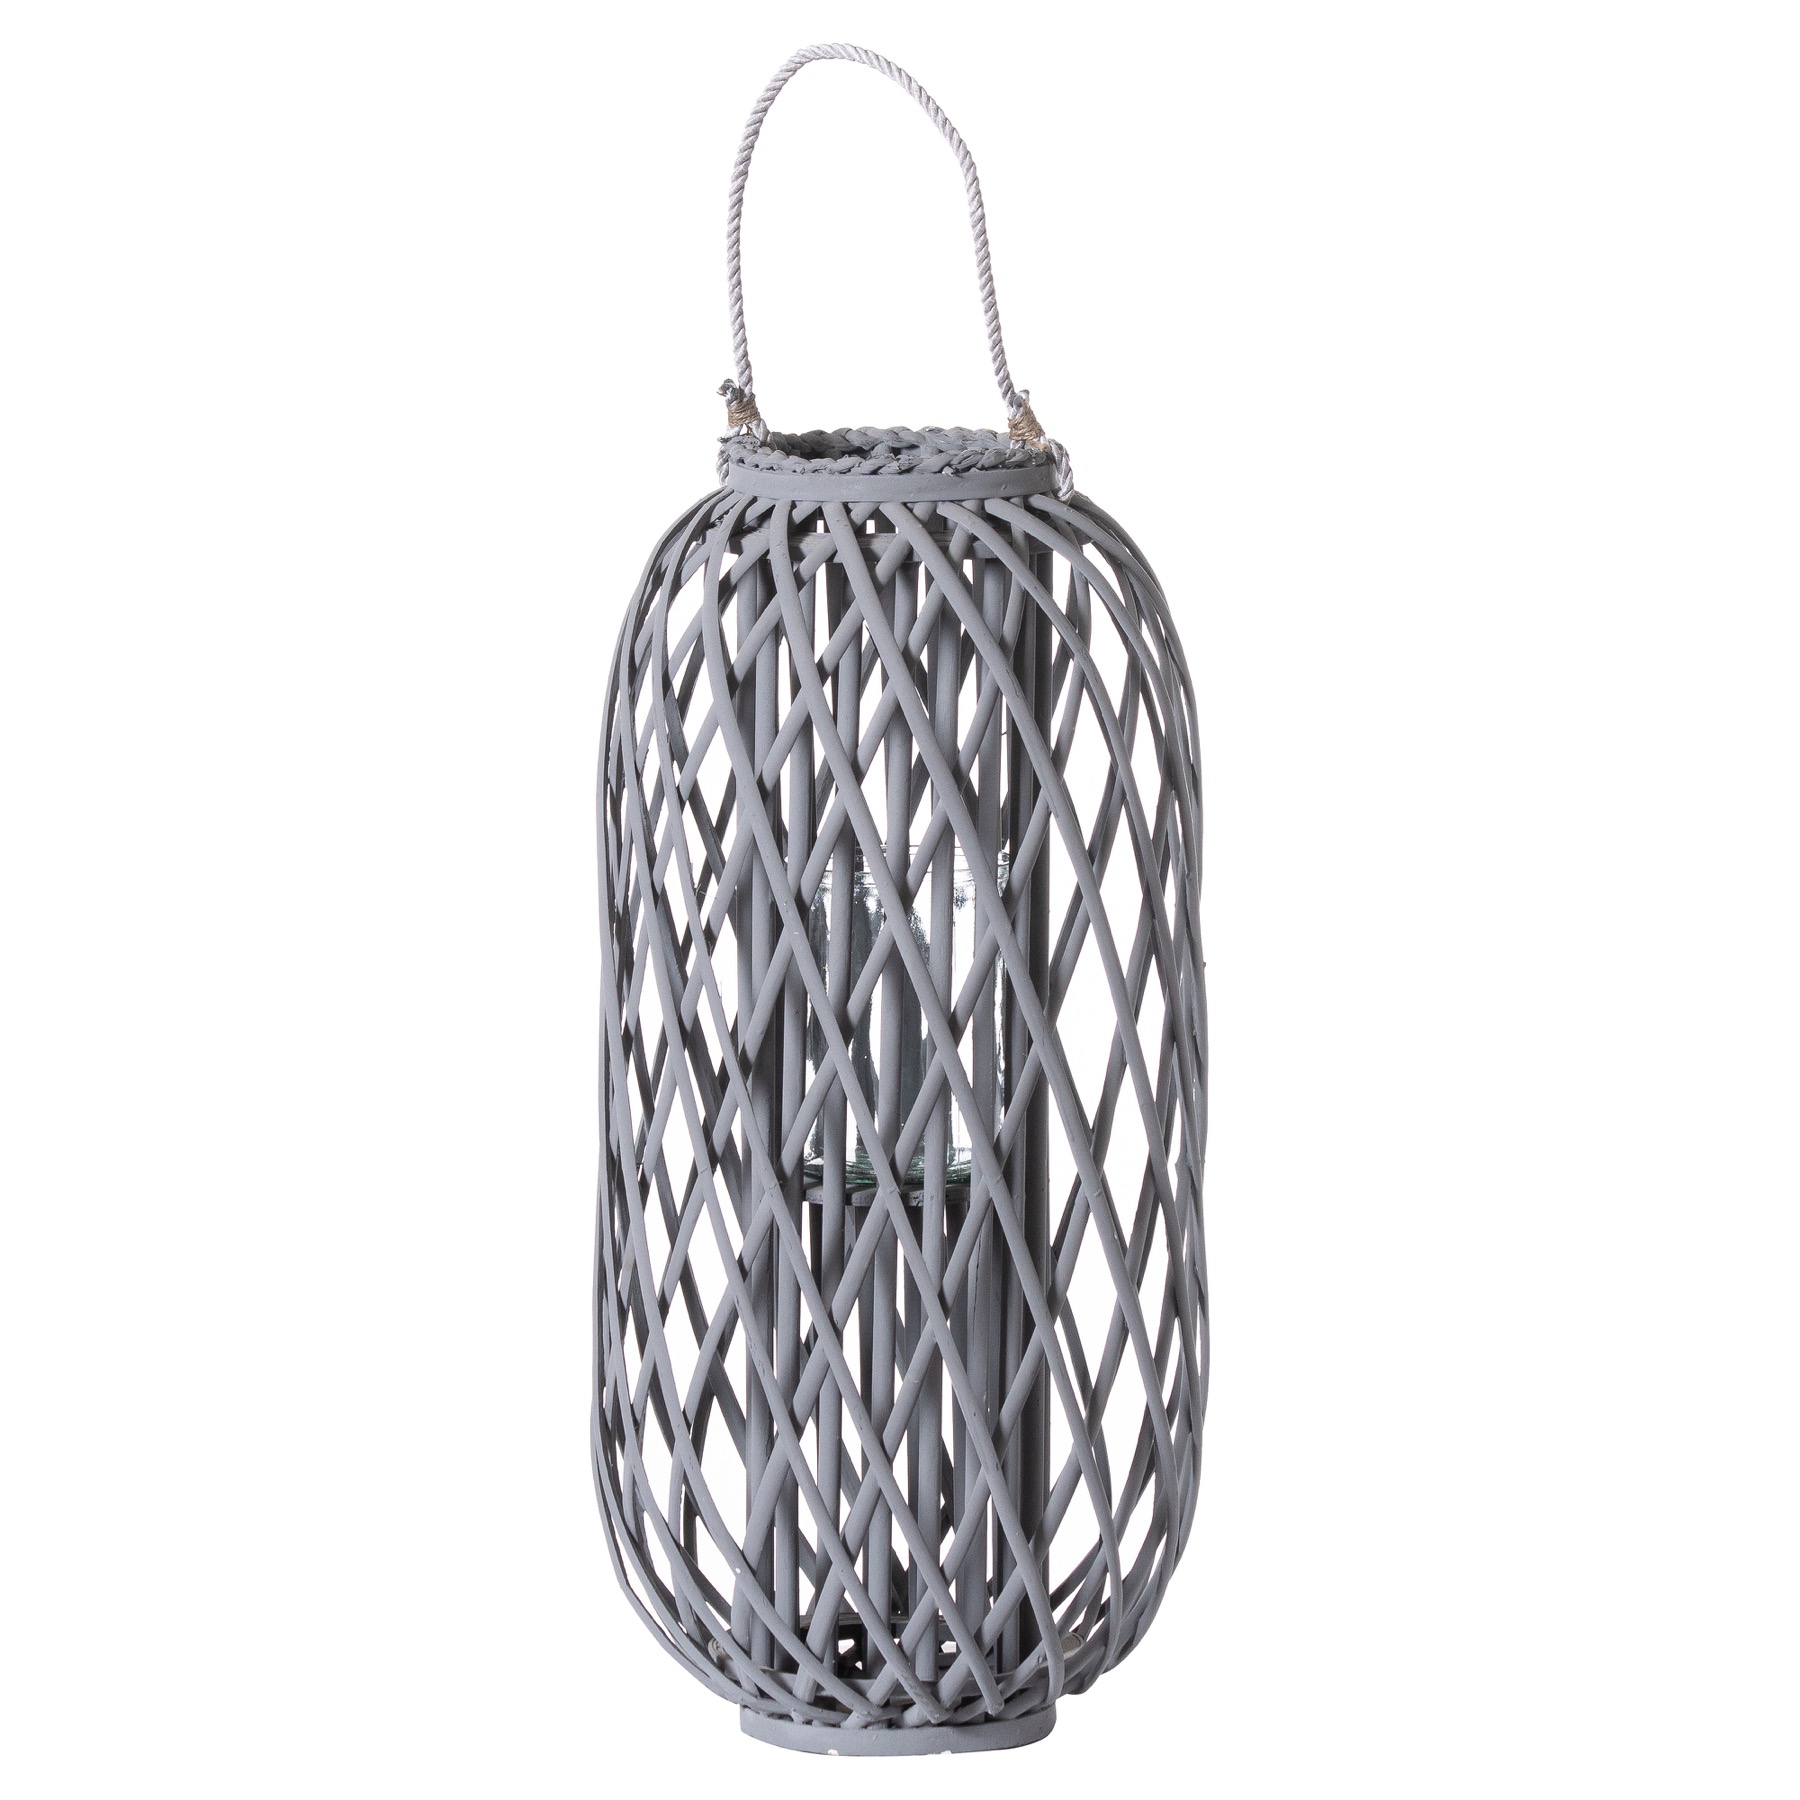 Large Grey Standing Wicker Lantern - Image 1